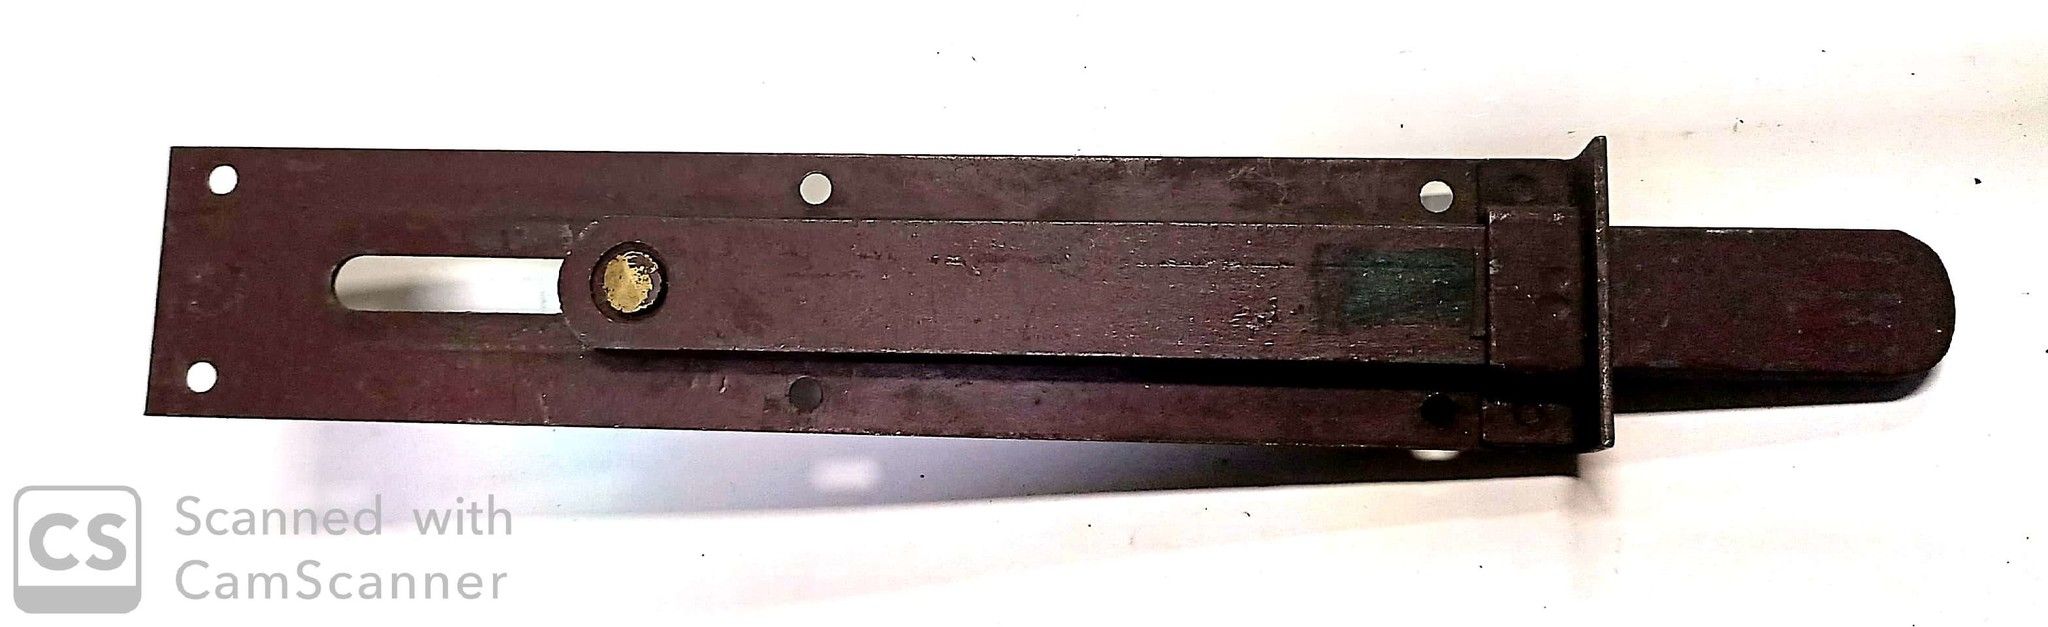 Catenaccio sottolama cm 22,5 tipo pesante in ferro verniciato